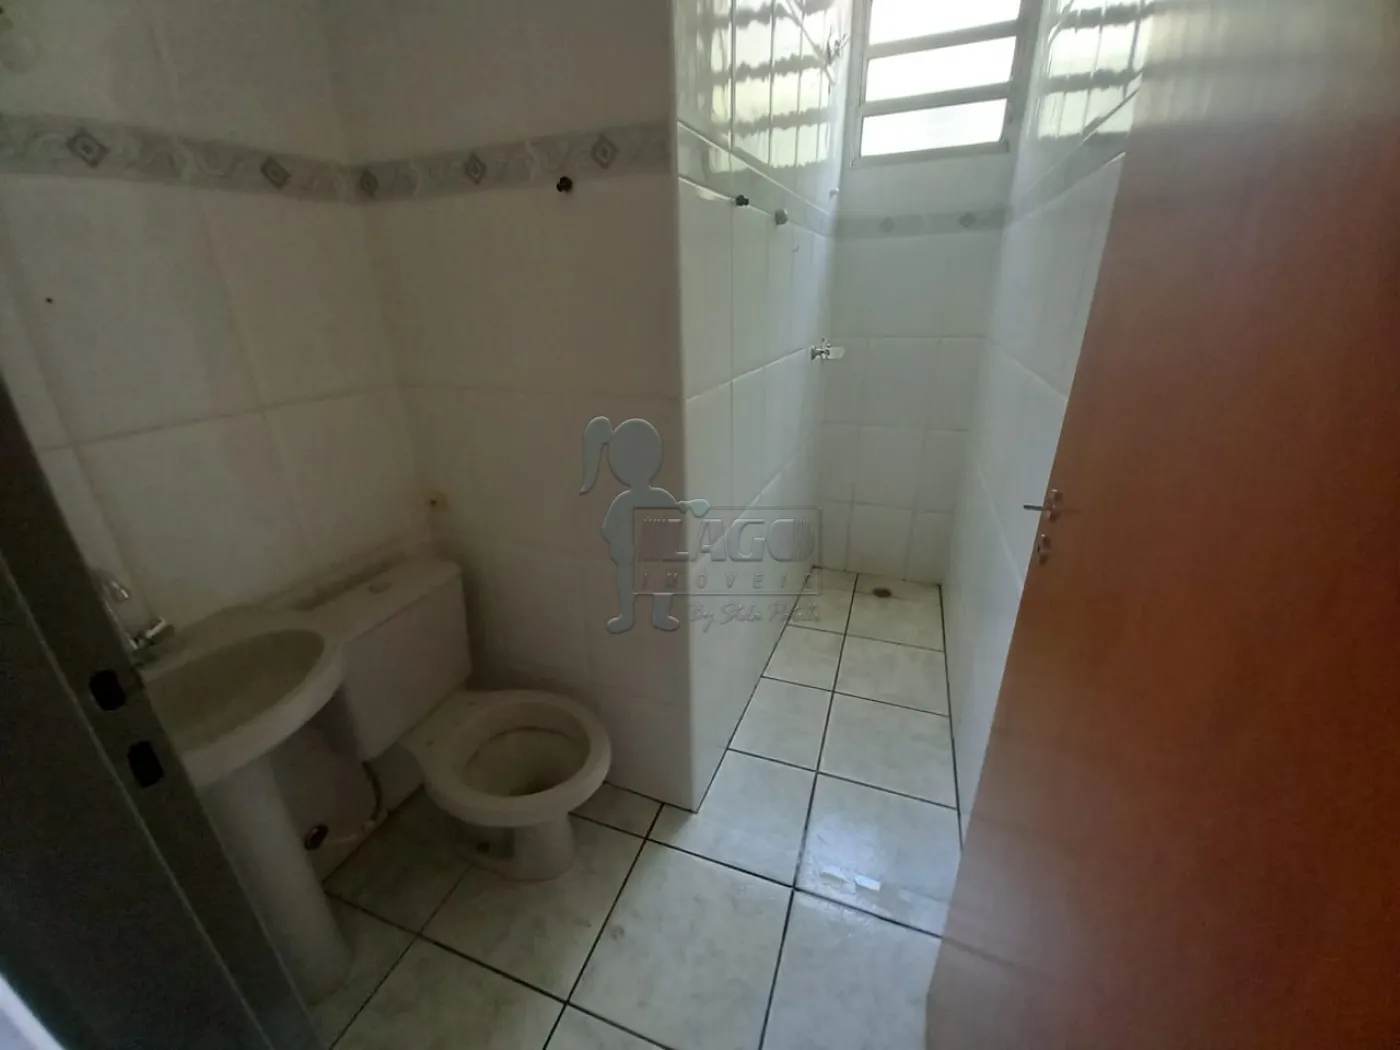 Alugar Apartamentos / Duplex em Ribeirão Preto R$ 750,00 - Foto 10